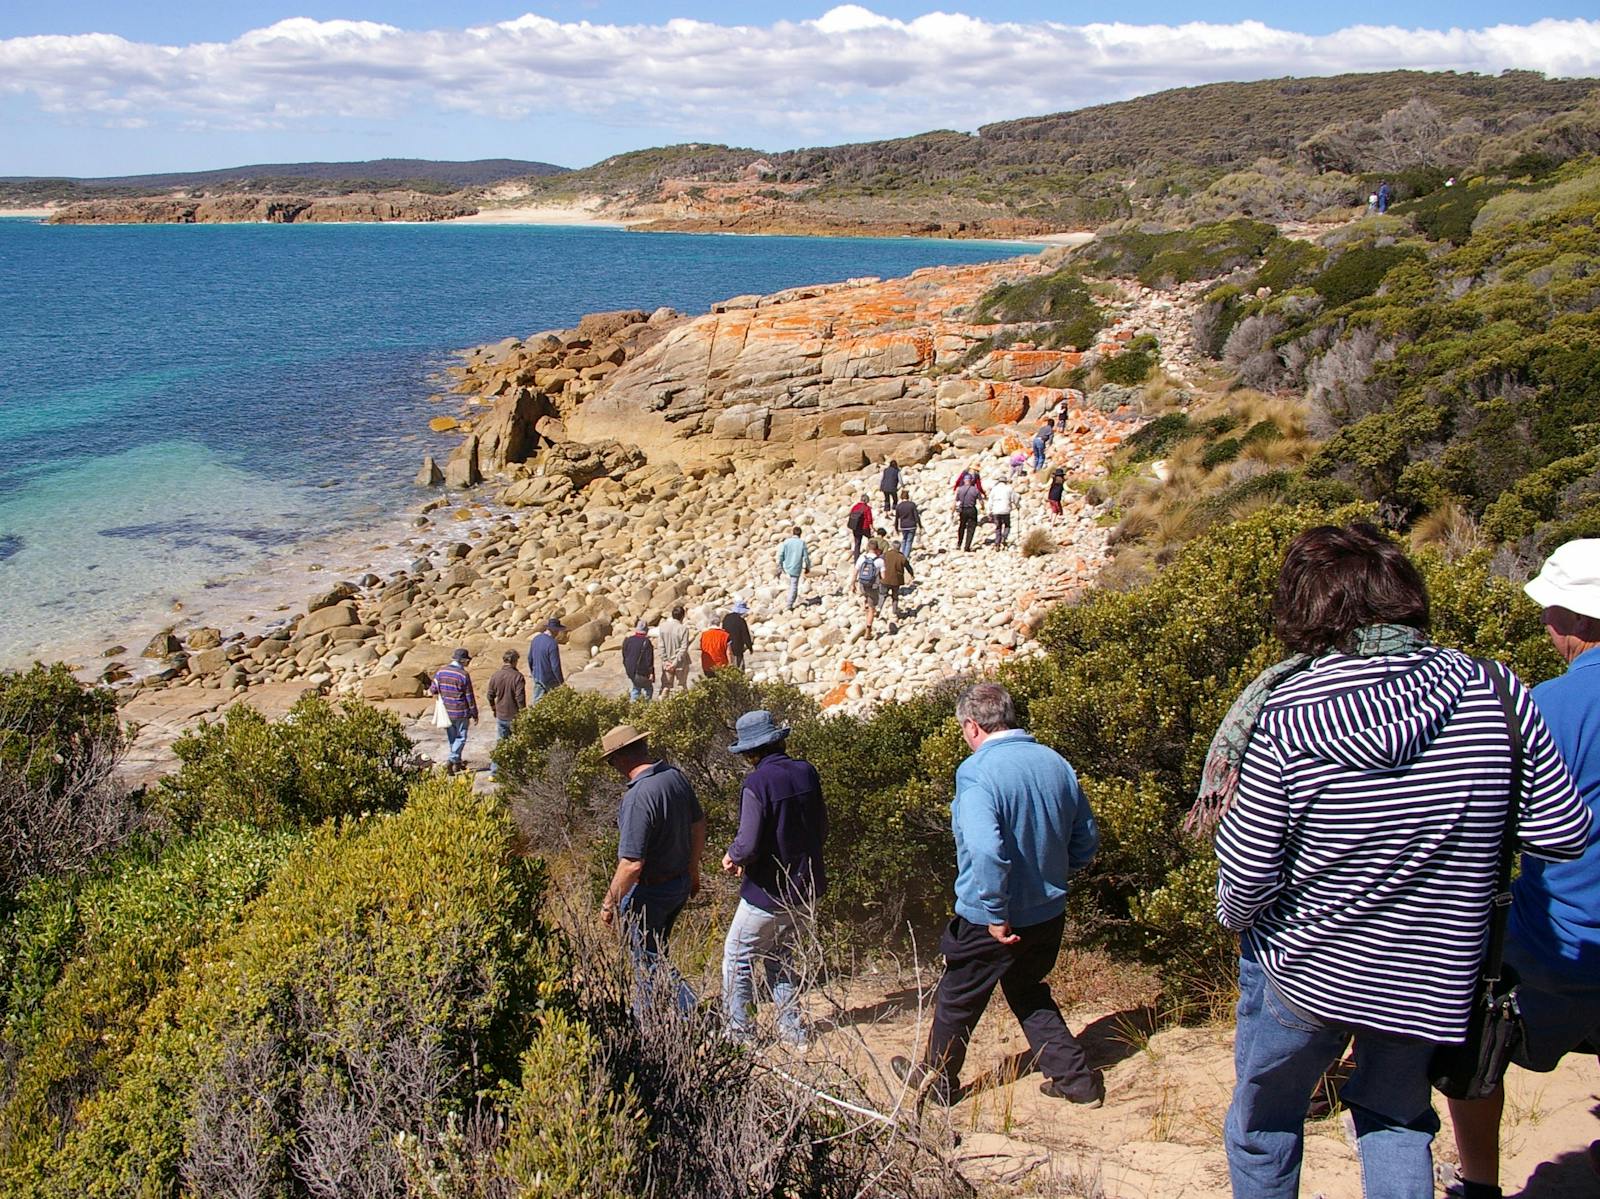 Beach walking to Castle Rock Flinders Island Tasmania